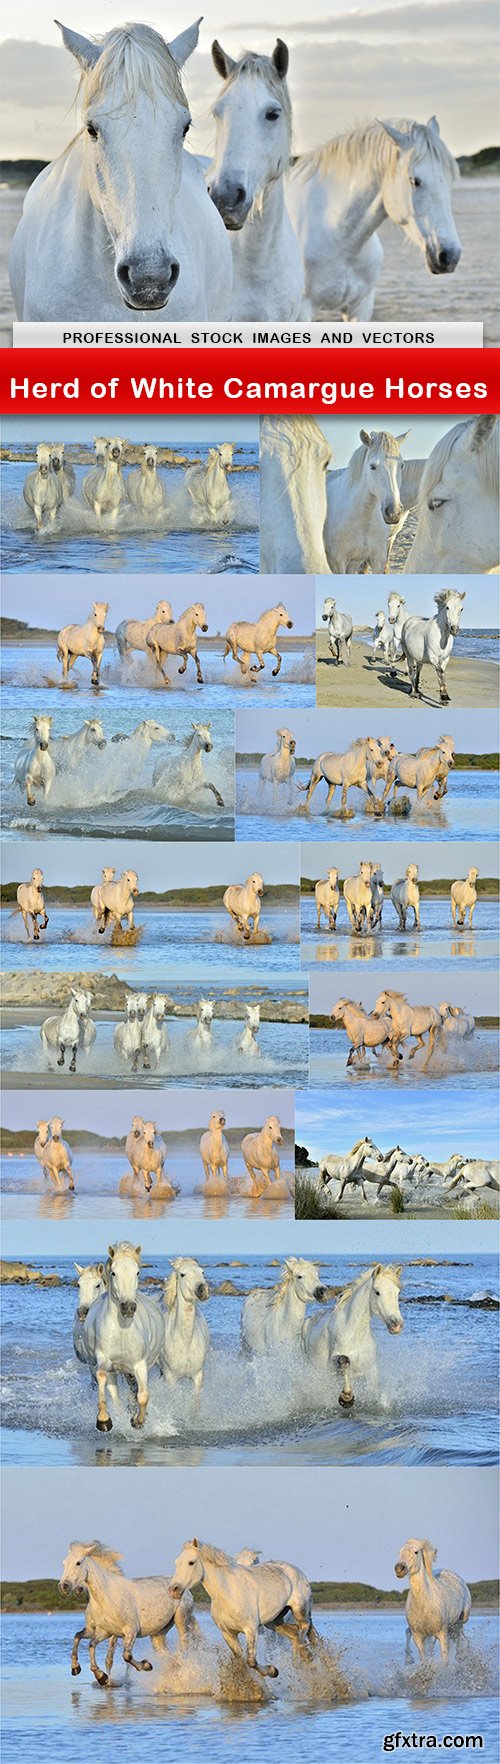 Herd of White Camargue Horses - 15 UHQ JPEG